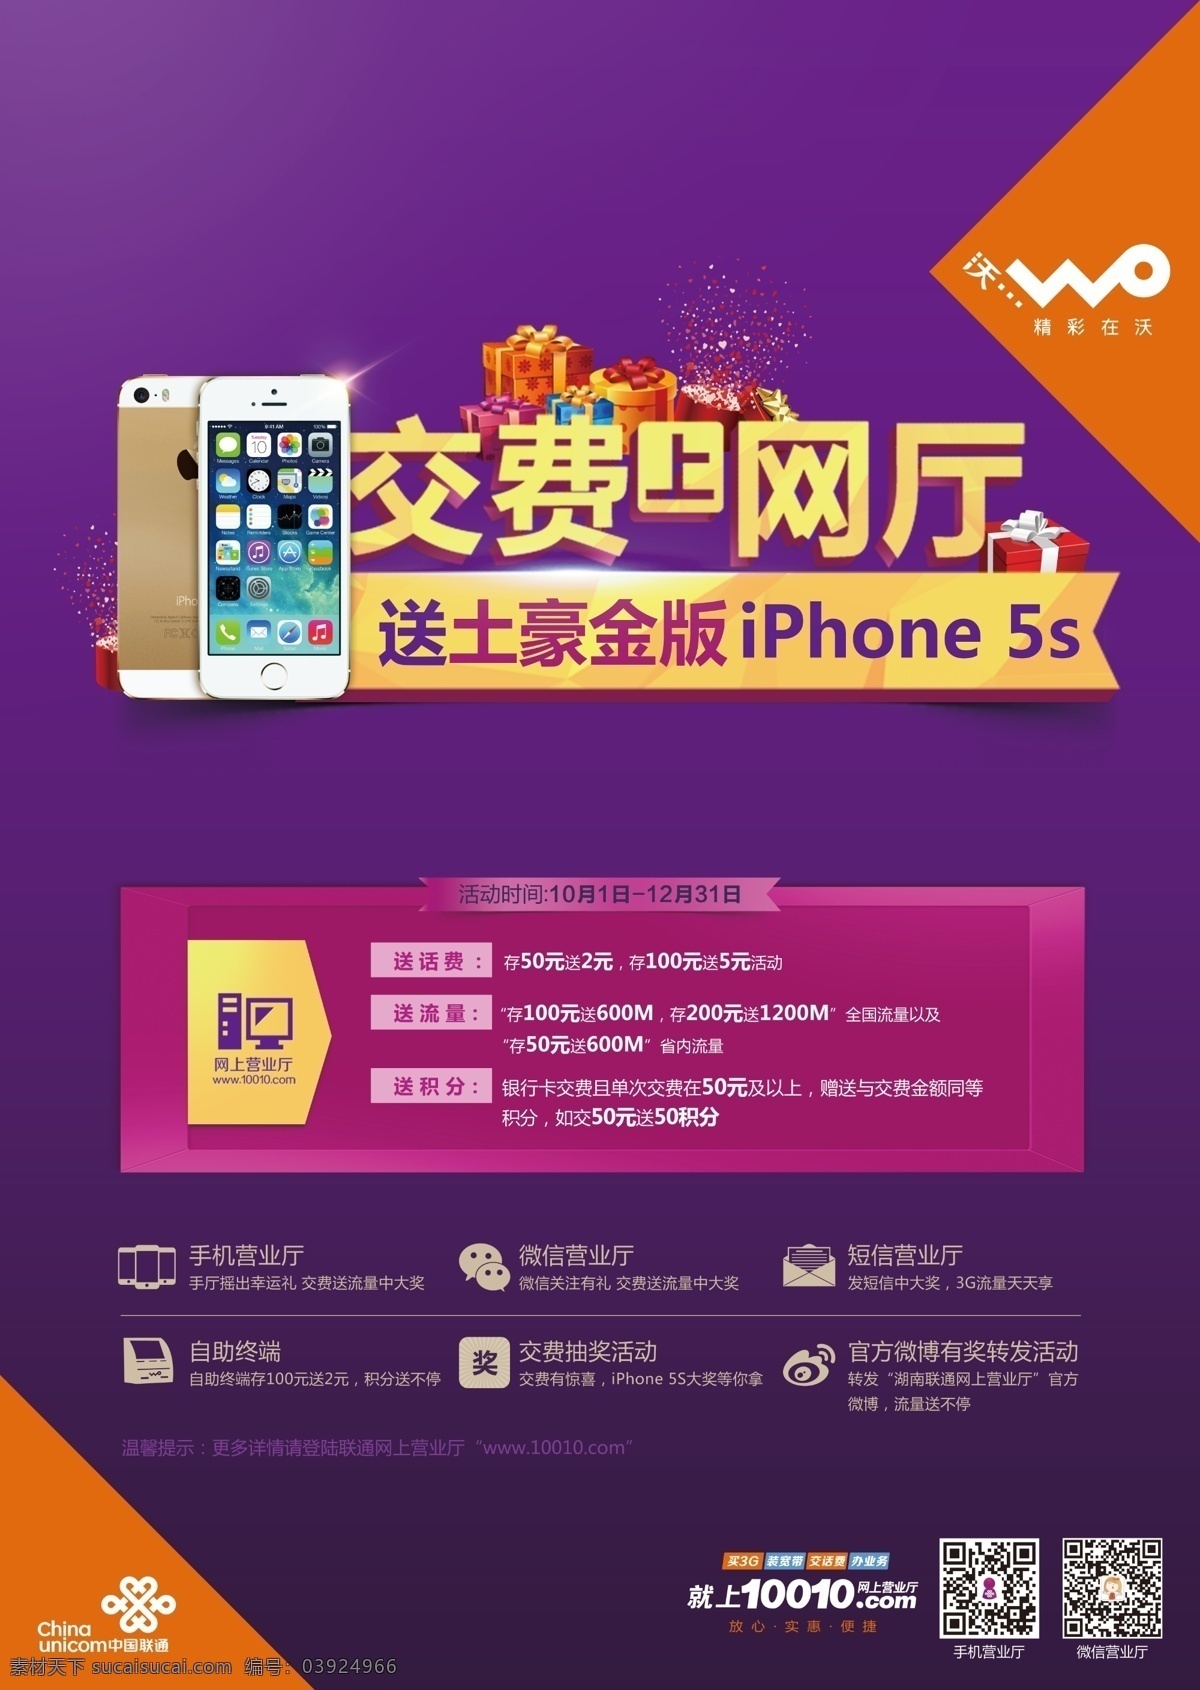 联通海报 中国联通 联通 交费 联通网上交费 iphone 5s 苹果5 苹果5s 海报 手机营业厅 存费有礼 积分 广告设计模板 源文件